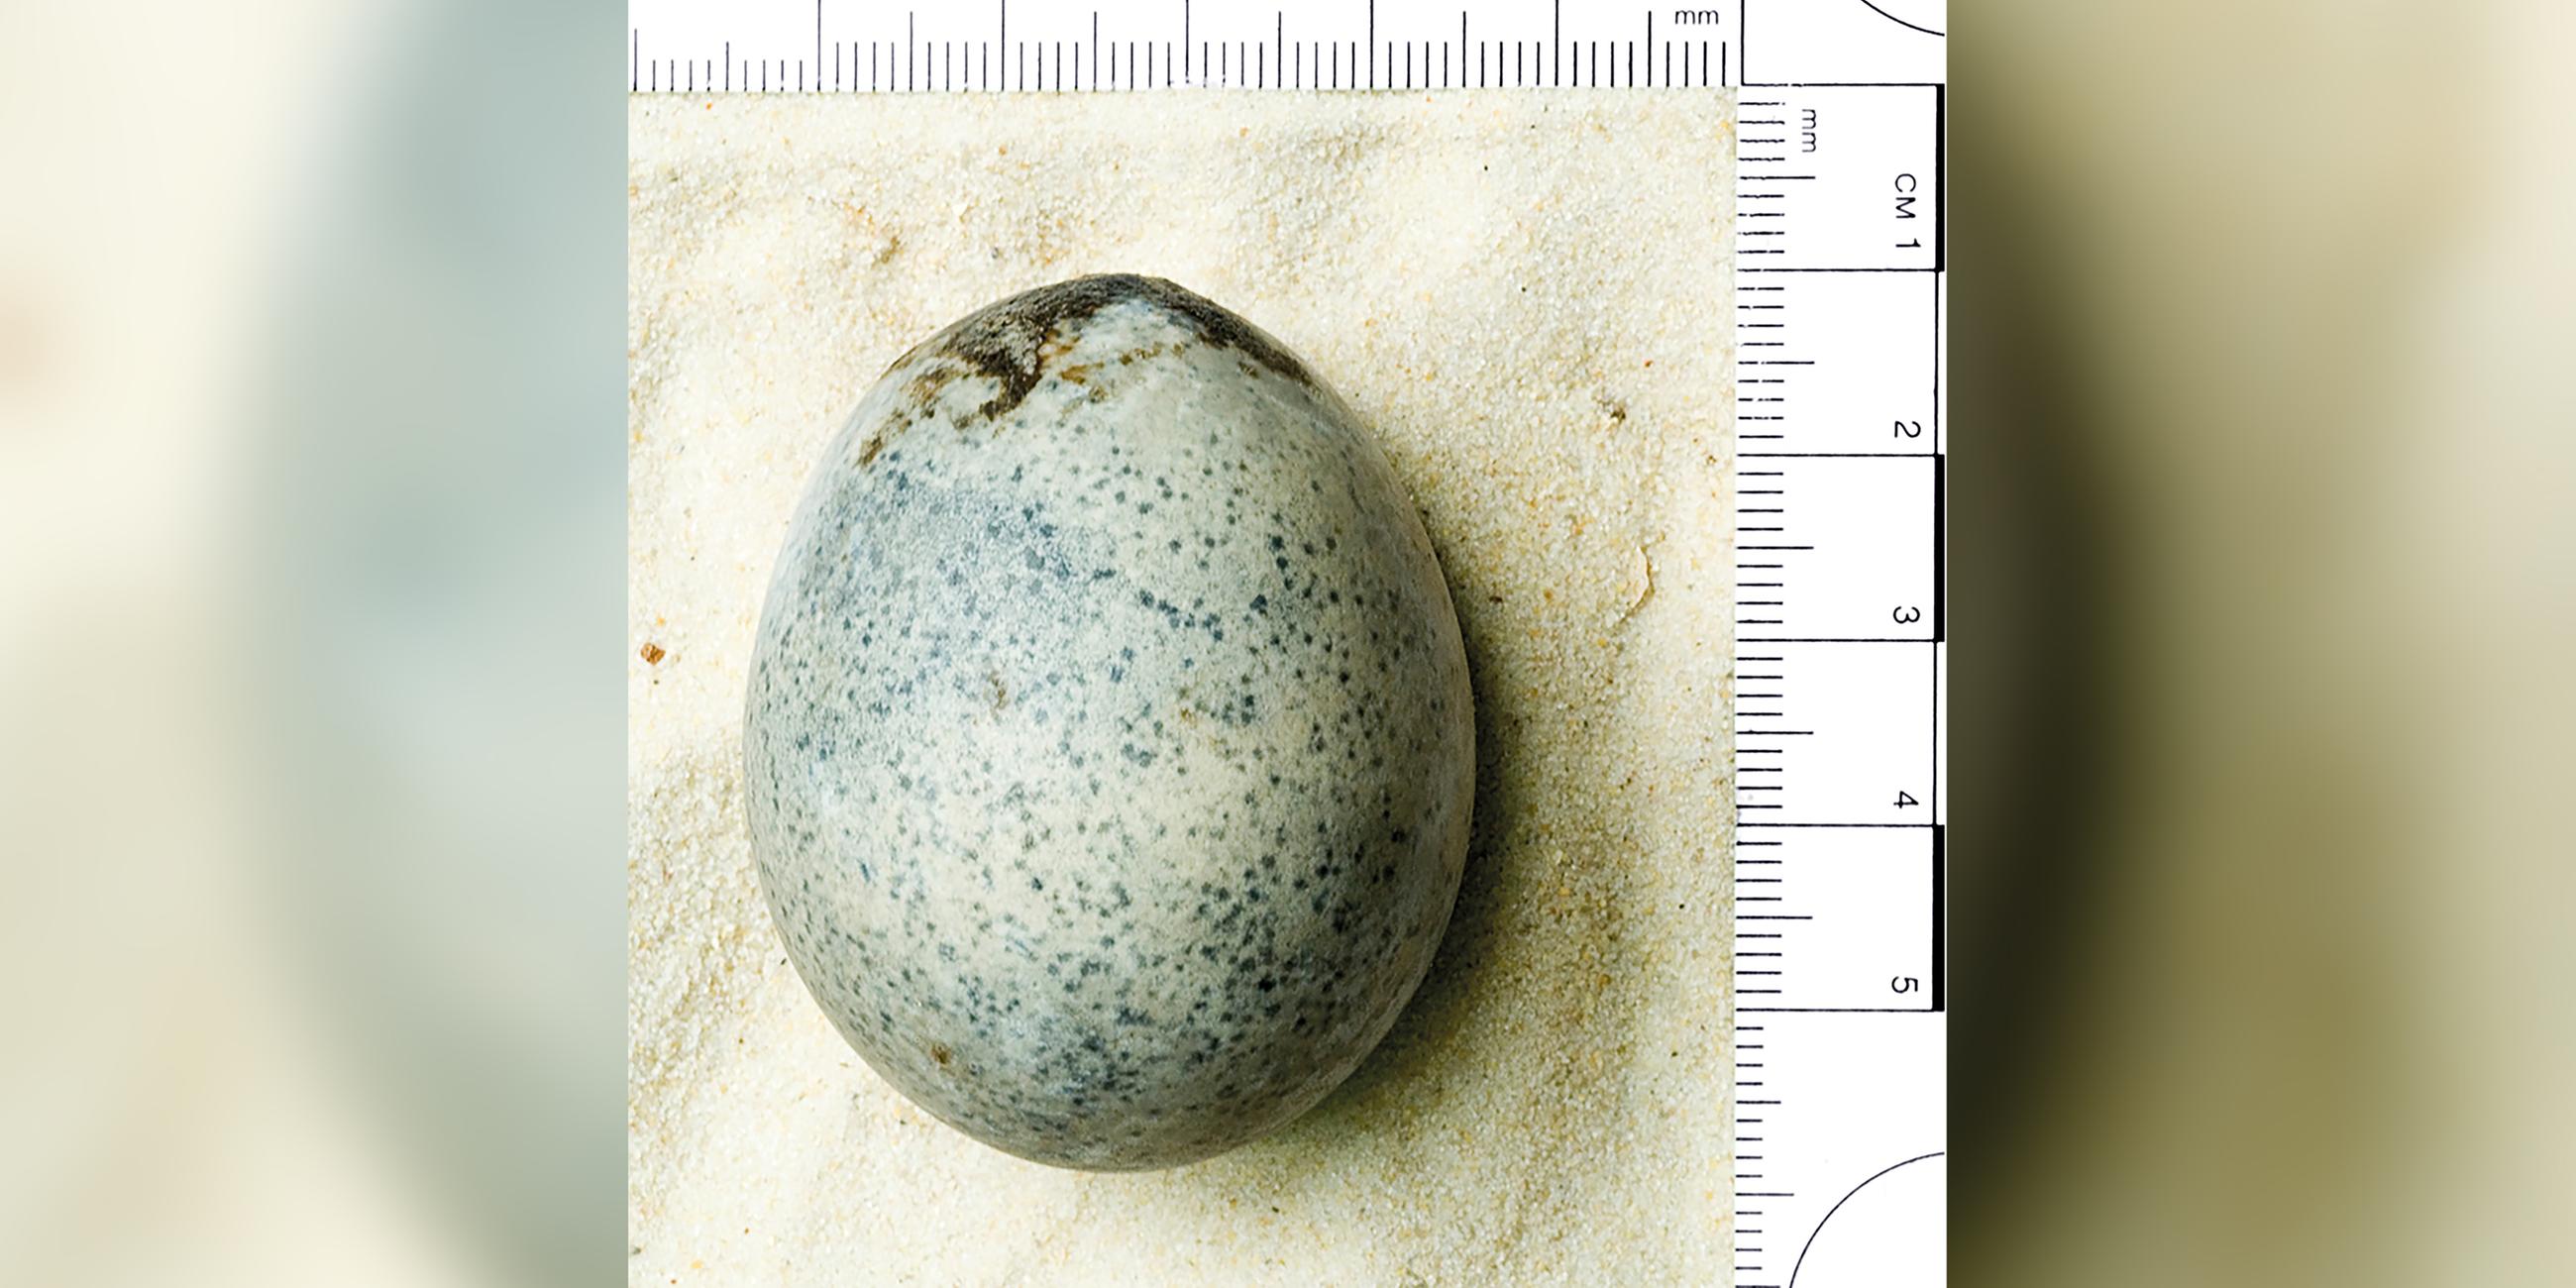 Ein Ei aus römischer Zeit, das vor einigen Jahren in Aylesbury gefunden wurde